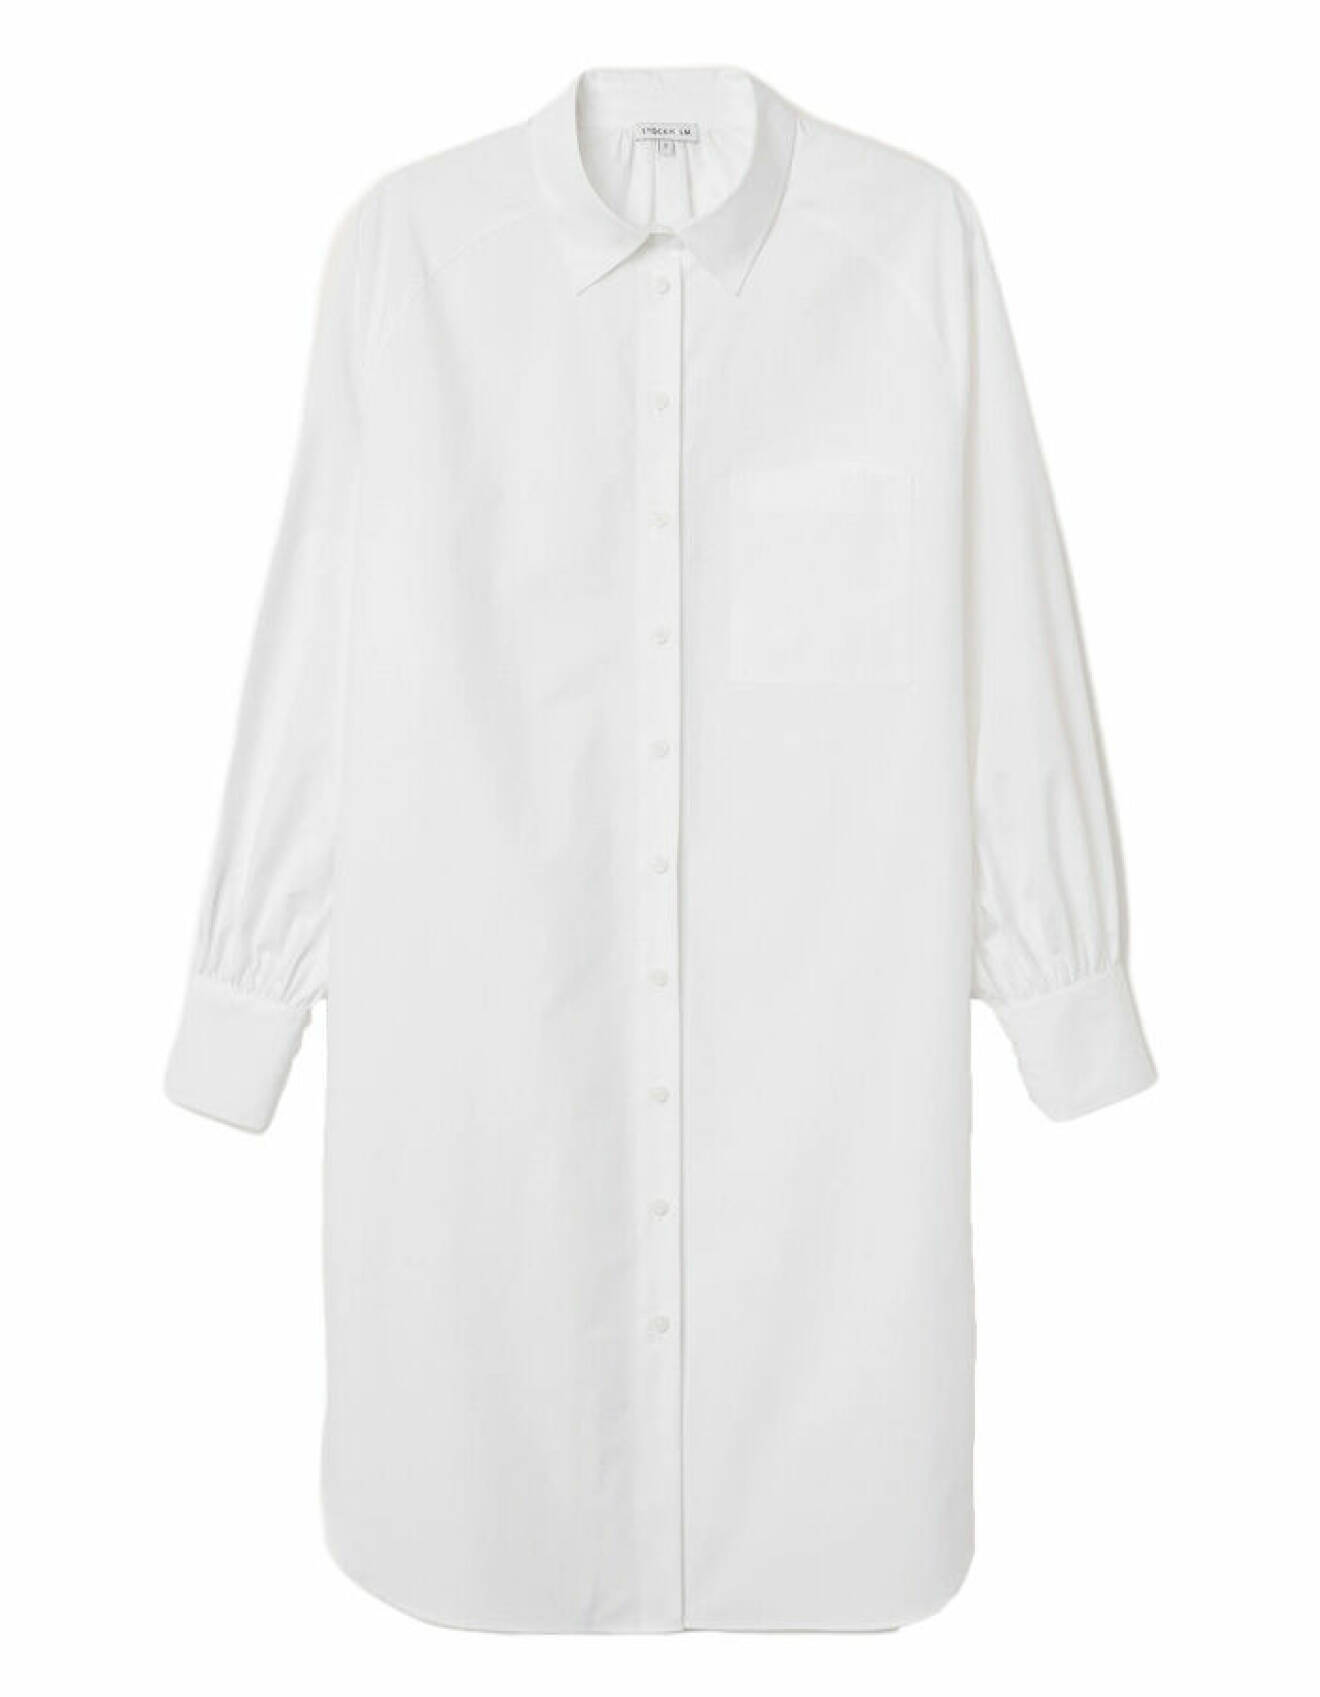 vit lång skjortklänning i en oversize siluett från stockh lm studio